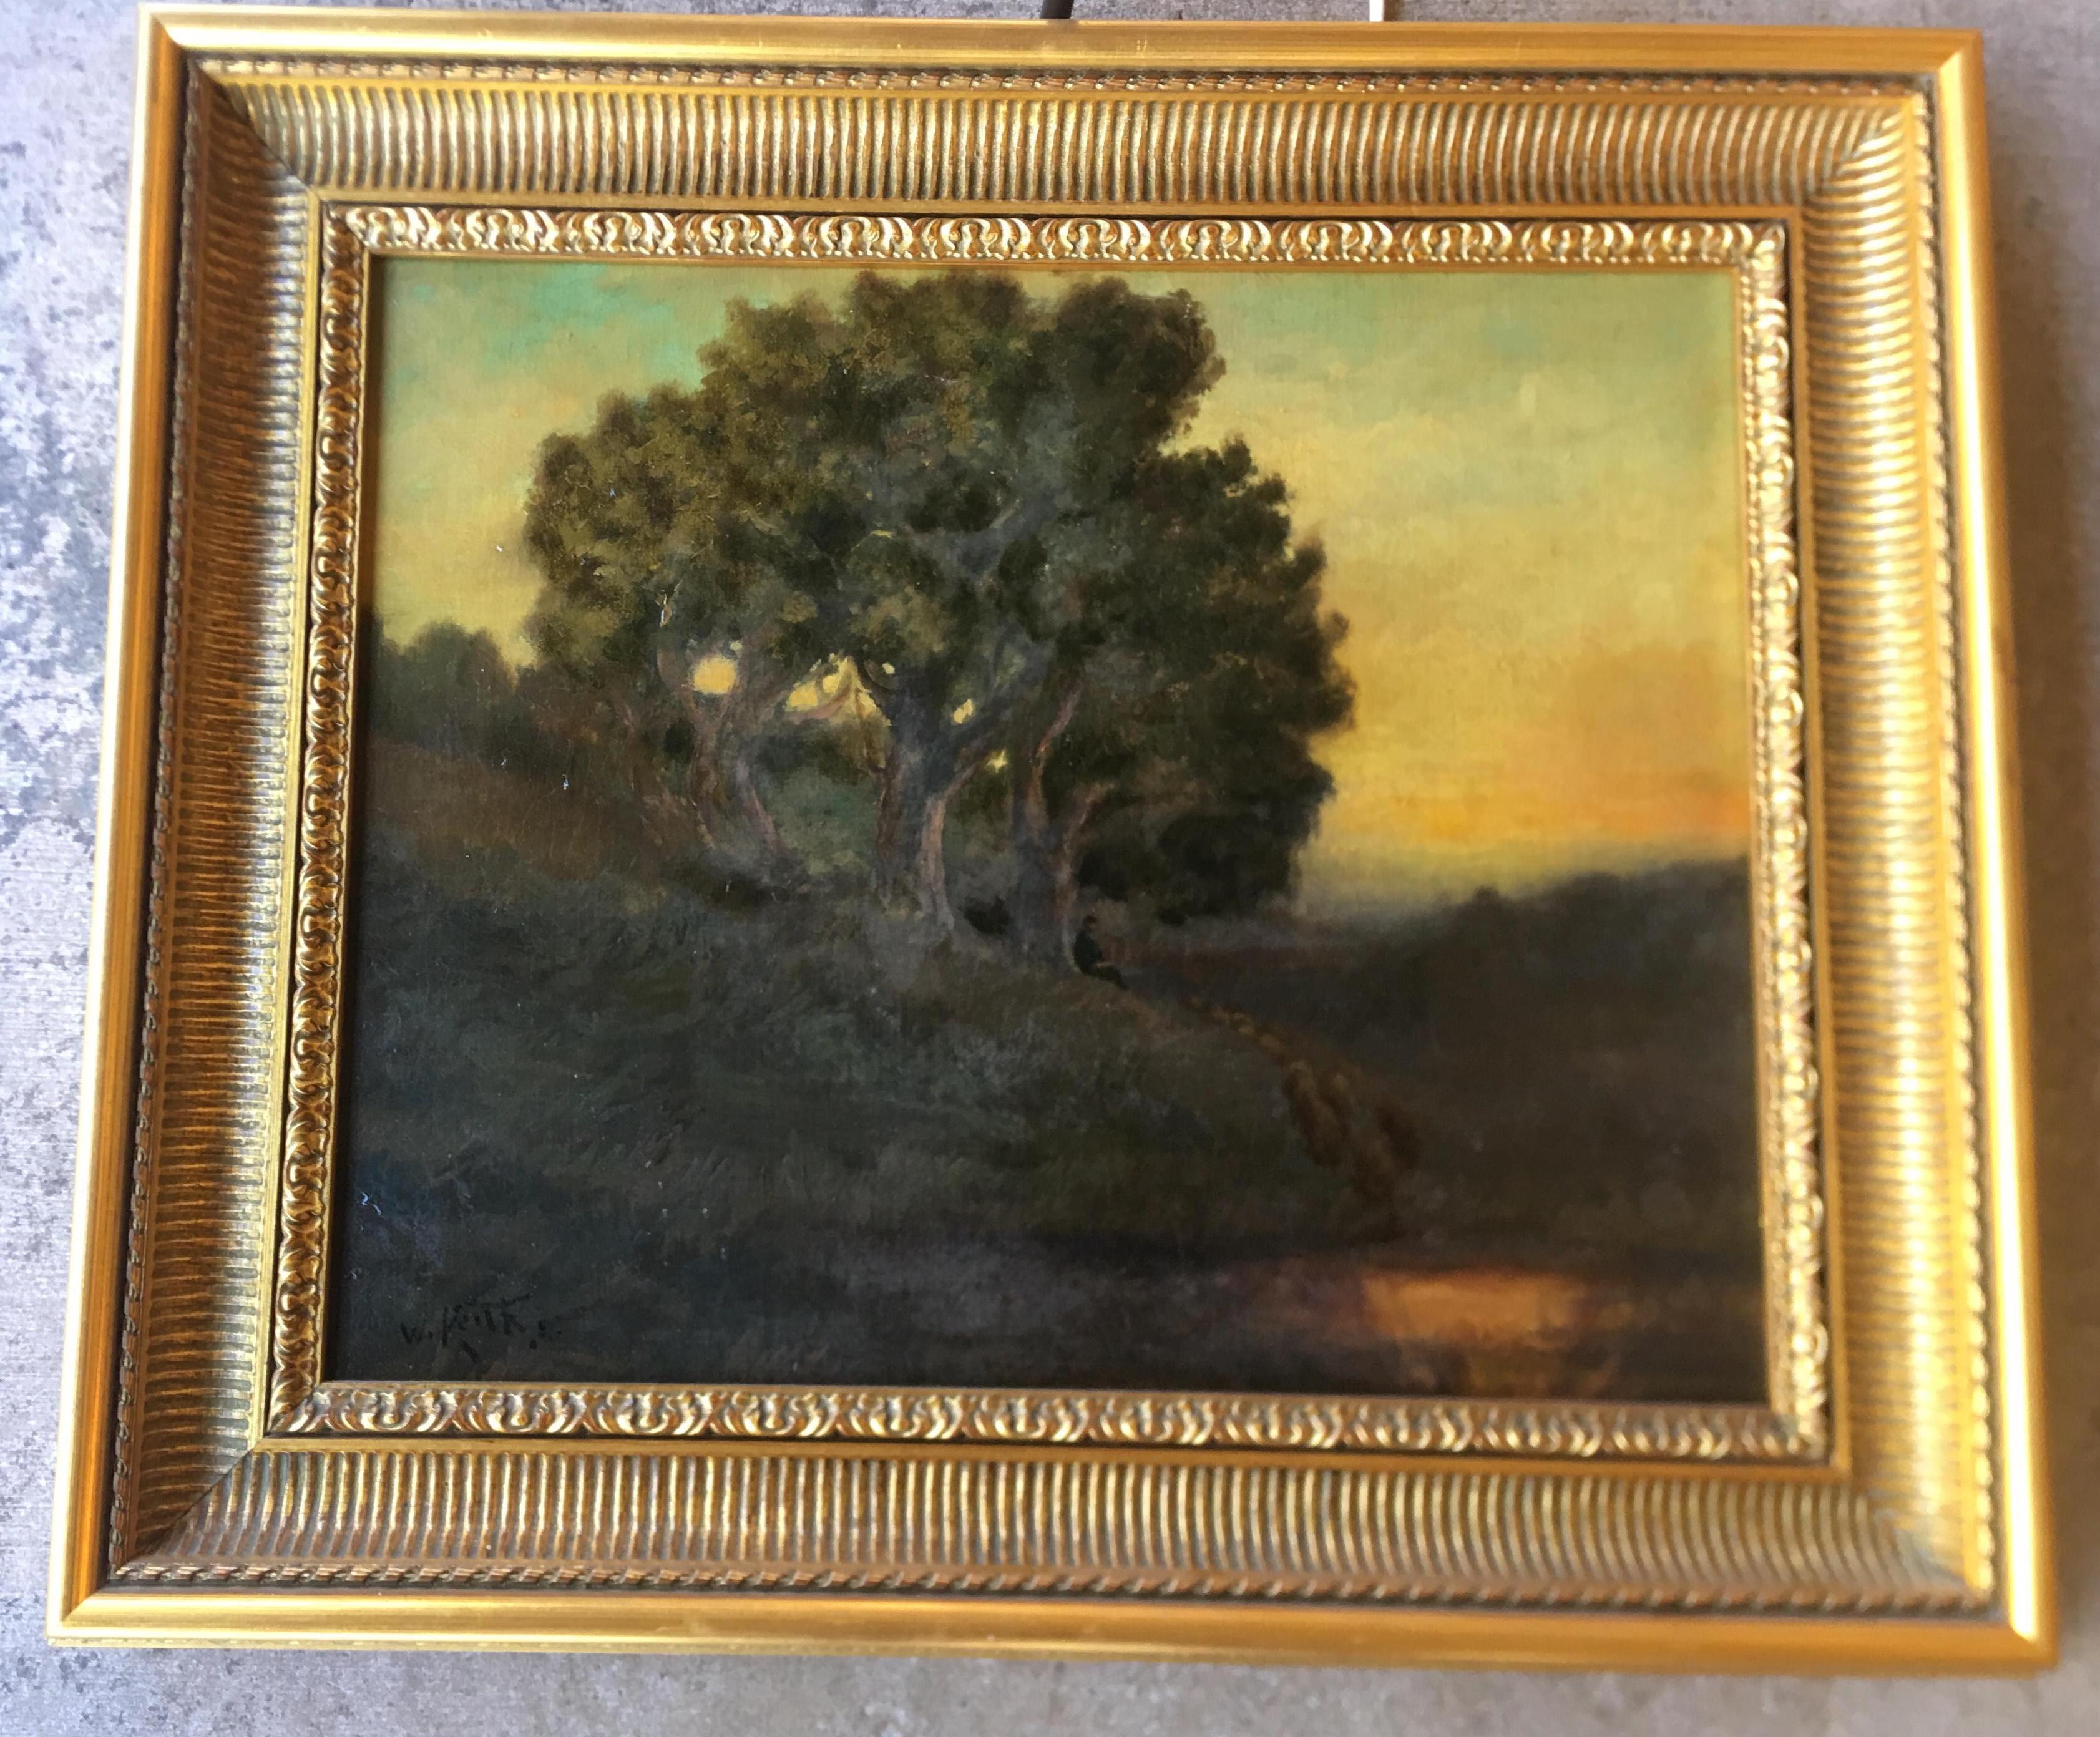 Peinture à l'huile originale sur toile, peinture de paysage de style tonal par l'artiste célèbre, décédé, répertorié, William Keith (1838-1911). La peinture représente un groupe d'arbres majestueux près d'un étang d'eau au crépuscule profond ou à